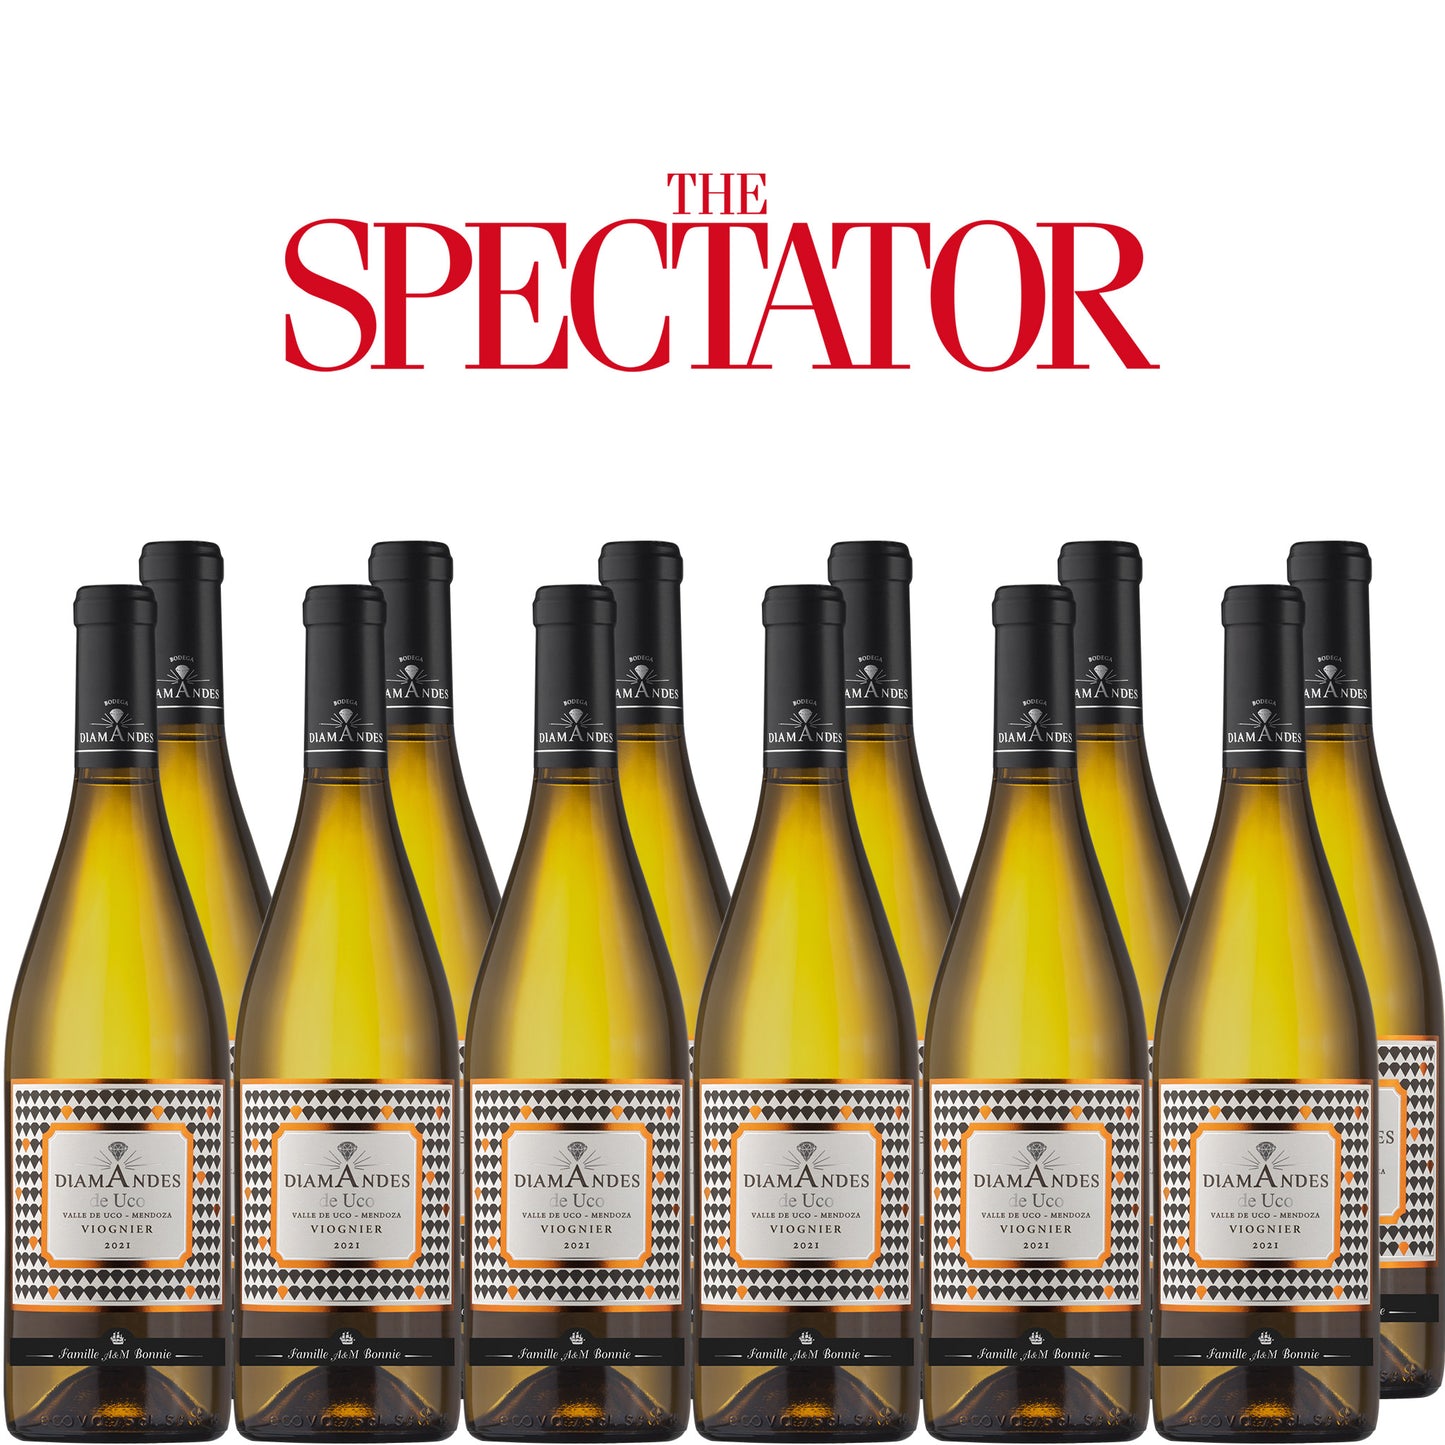 Spectator Wine Club - 12x Bodega DiamAndes de Uco Viognier